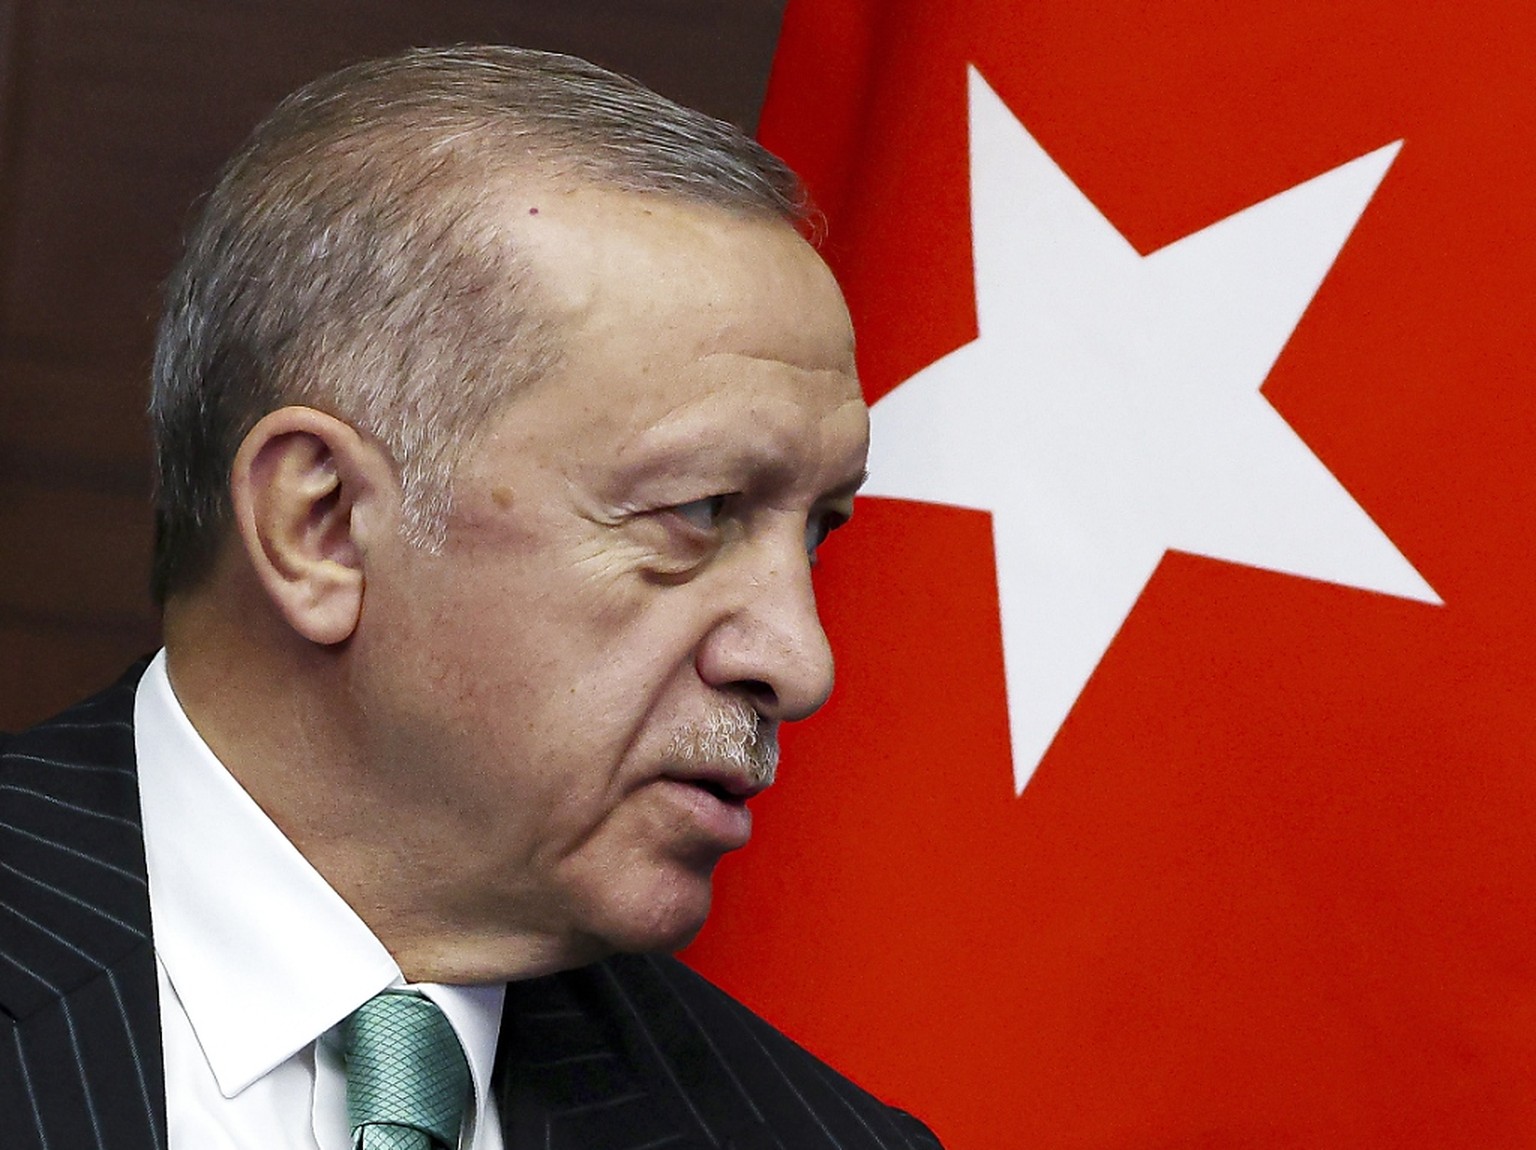 Recep Tayyip Erdogan menace depuis novembre de lancer une op